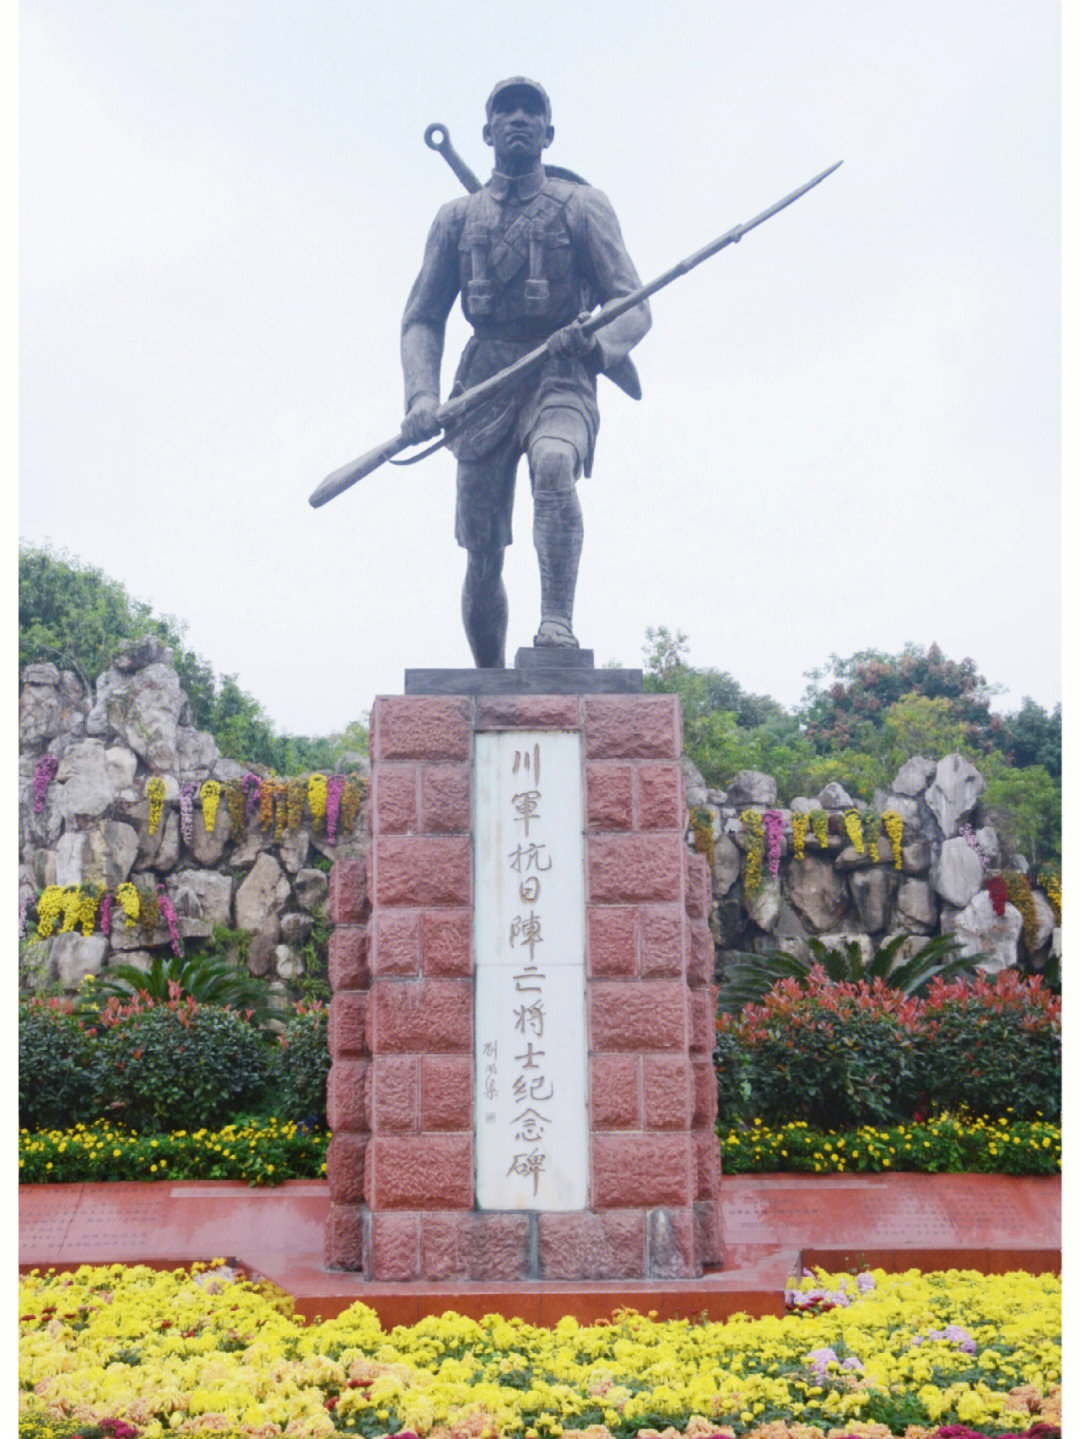 川军纪念碑94所在地区:四川省成都市青羊区